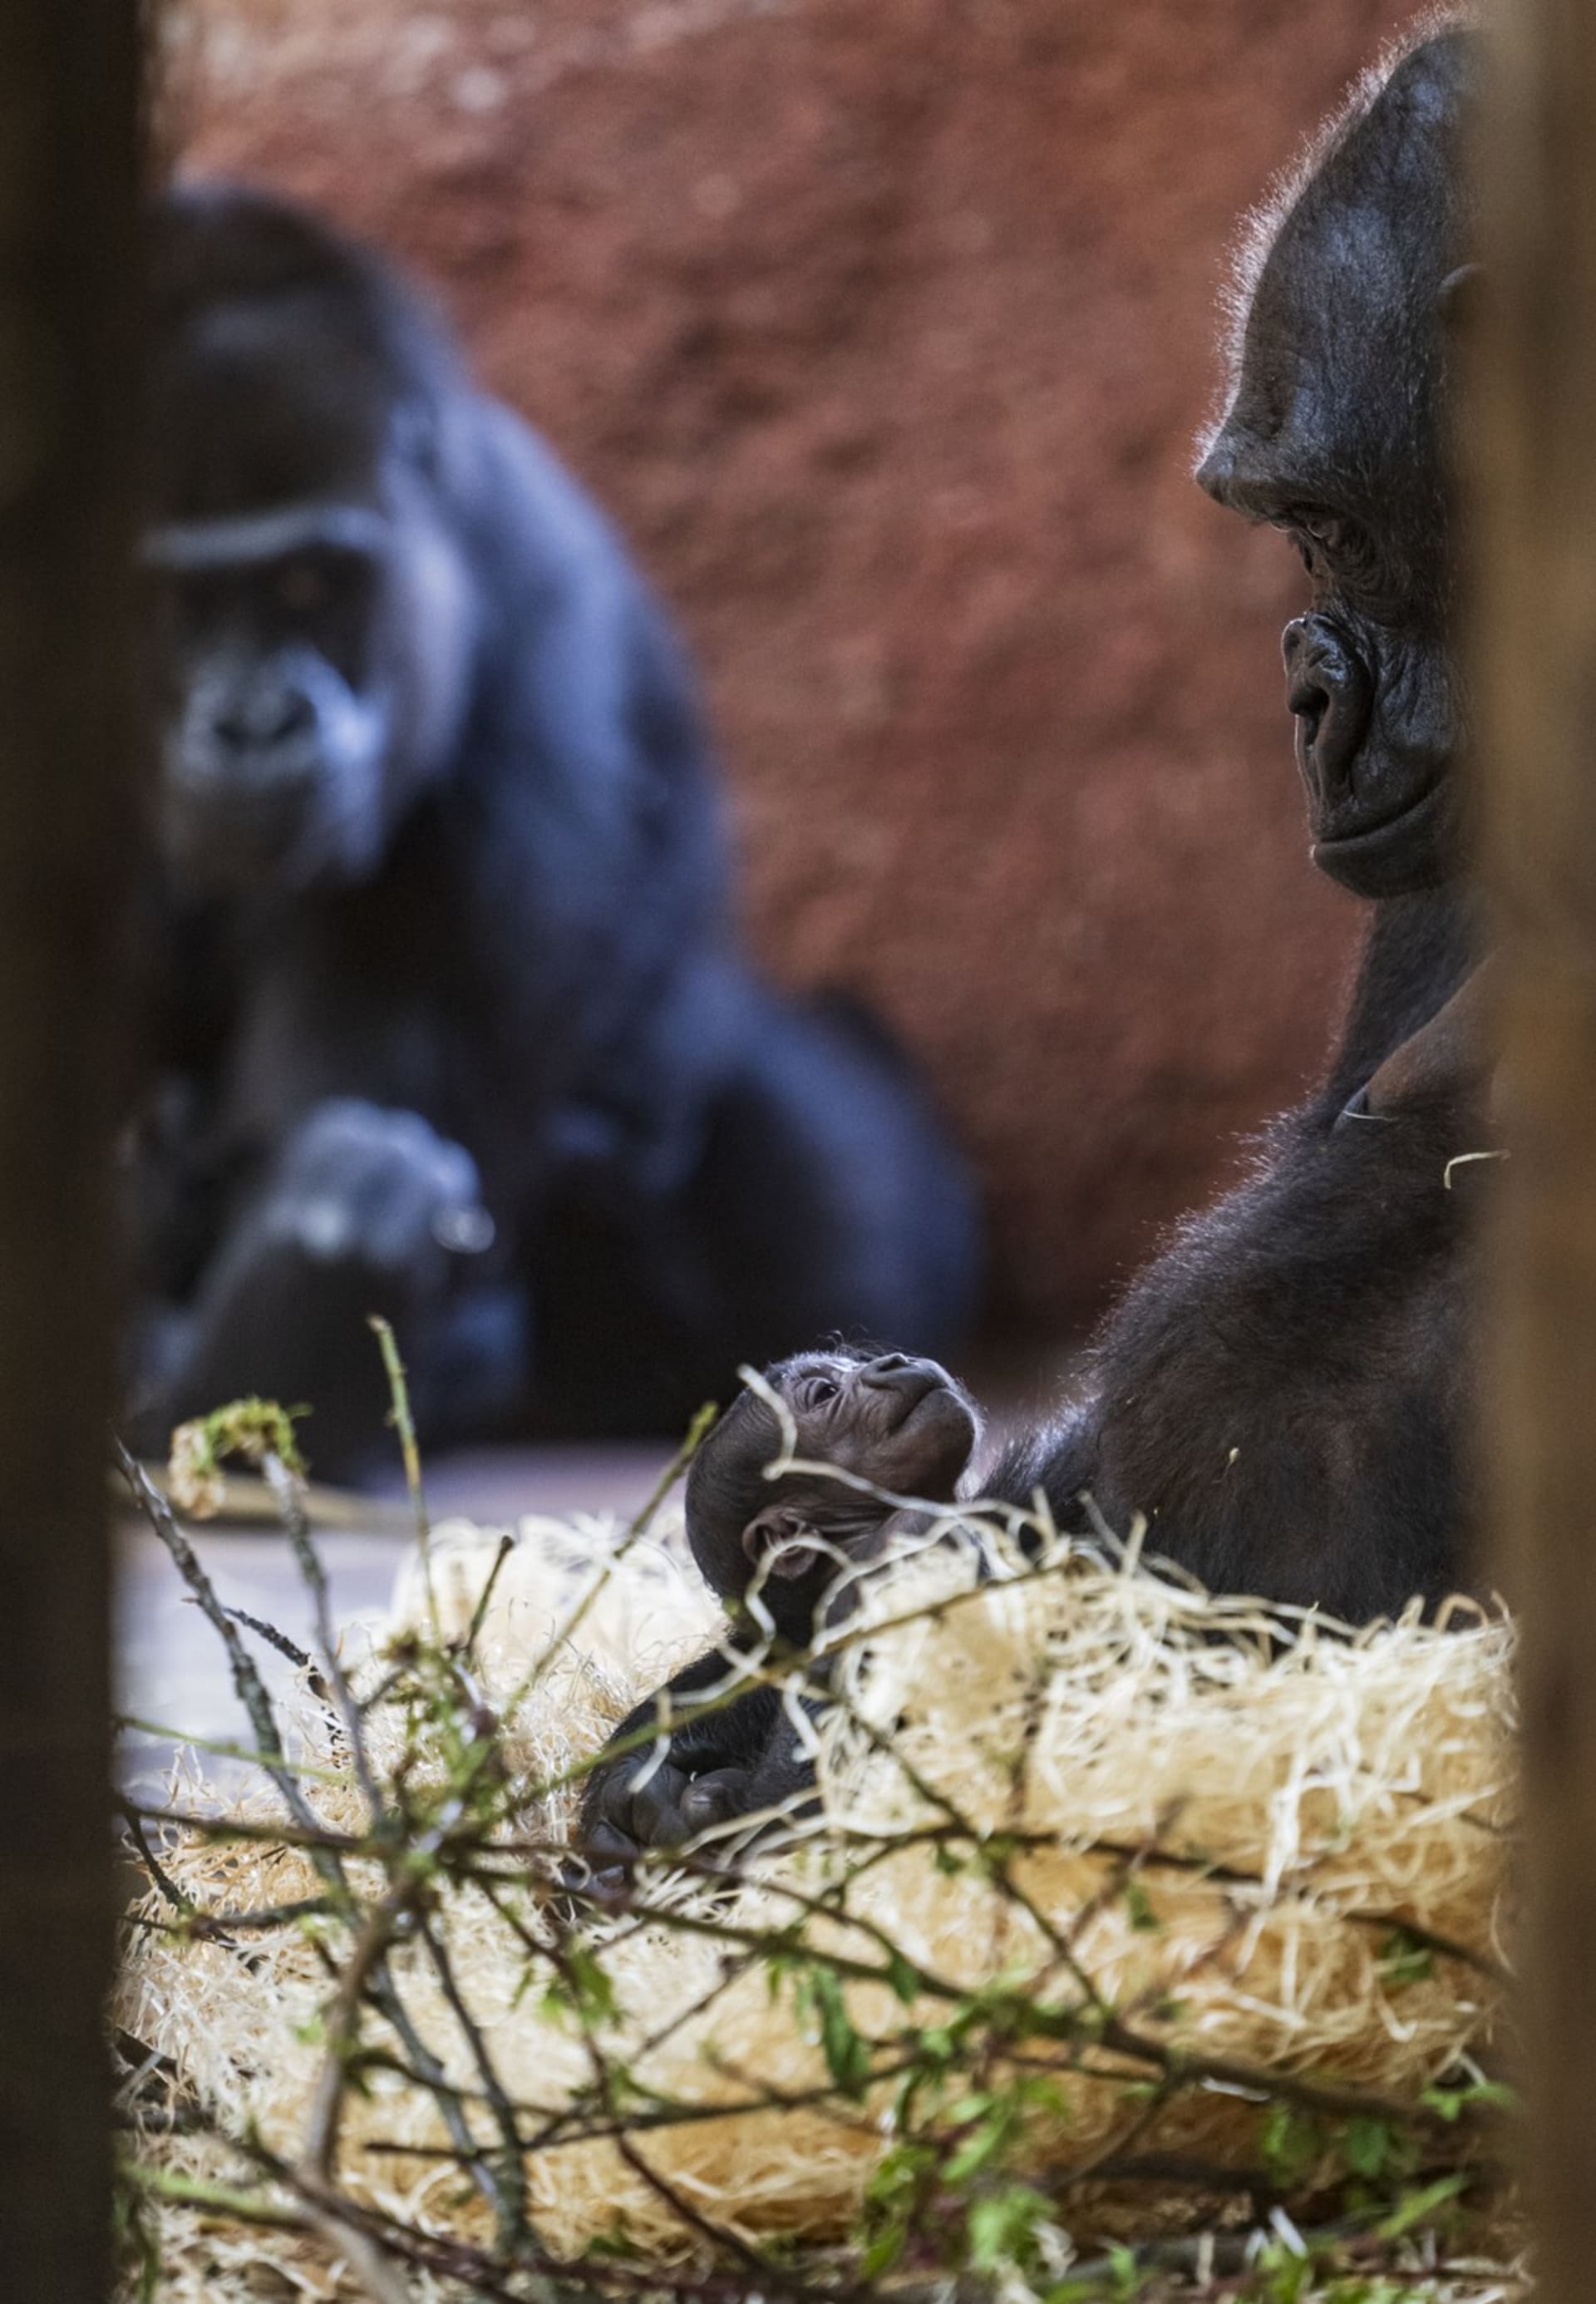 Chovatelé prosí návštěvníky pražské zoo, aby v pavilonu goril nepoužívali velké objektivy